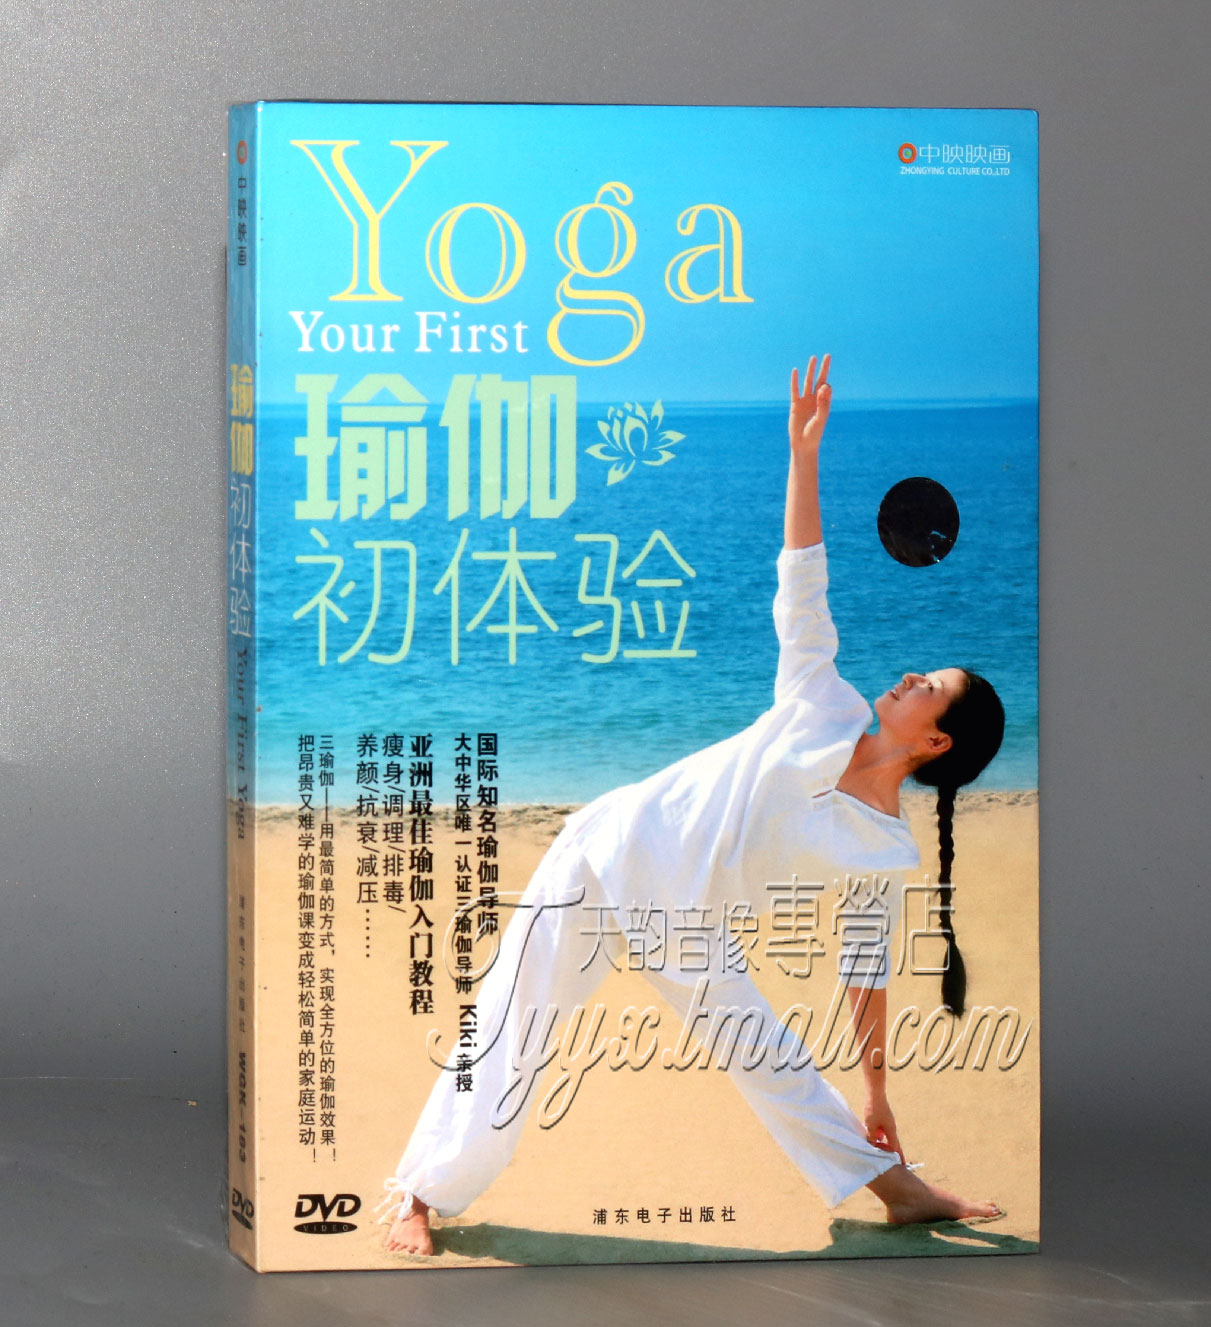 正版 瑜珈初体验 瑜伽练习光盘 视频教程 瑜伽基础入门课程 DVD